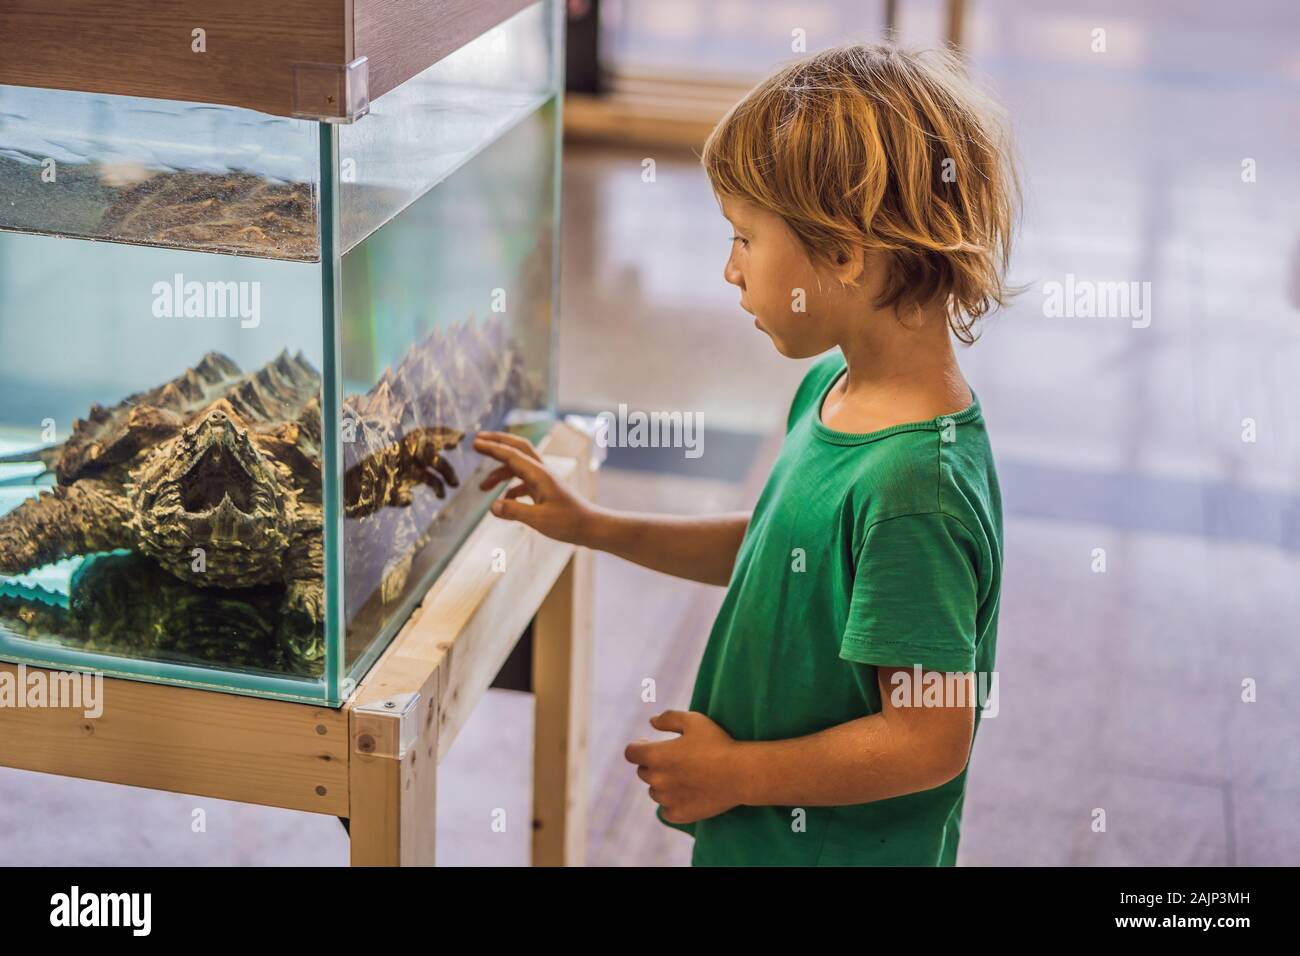 Kleines Kind Junge bewundern große Schildkröten im Terrarium durch das Glas  Stockfotografie - Alamy